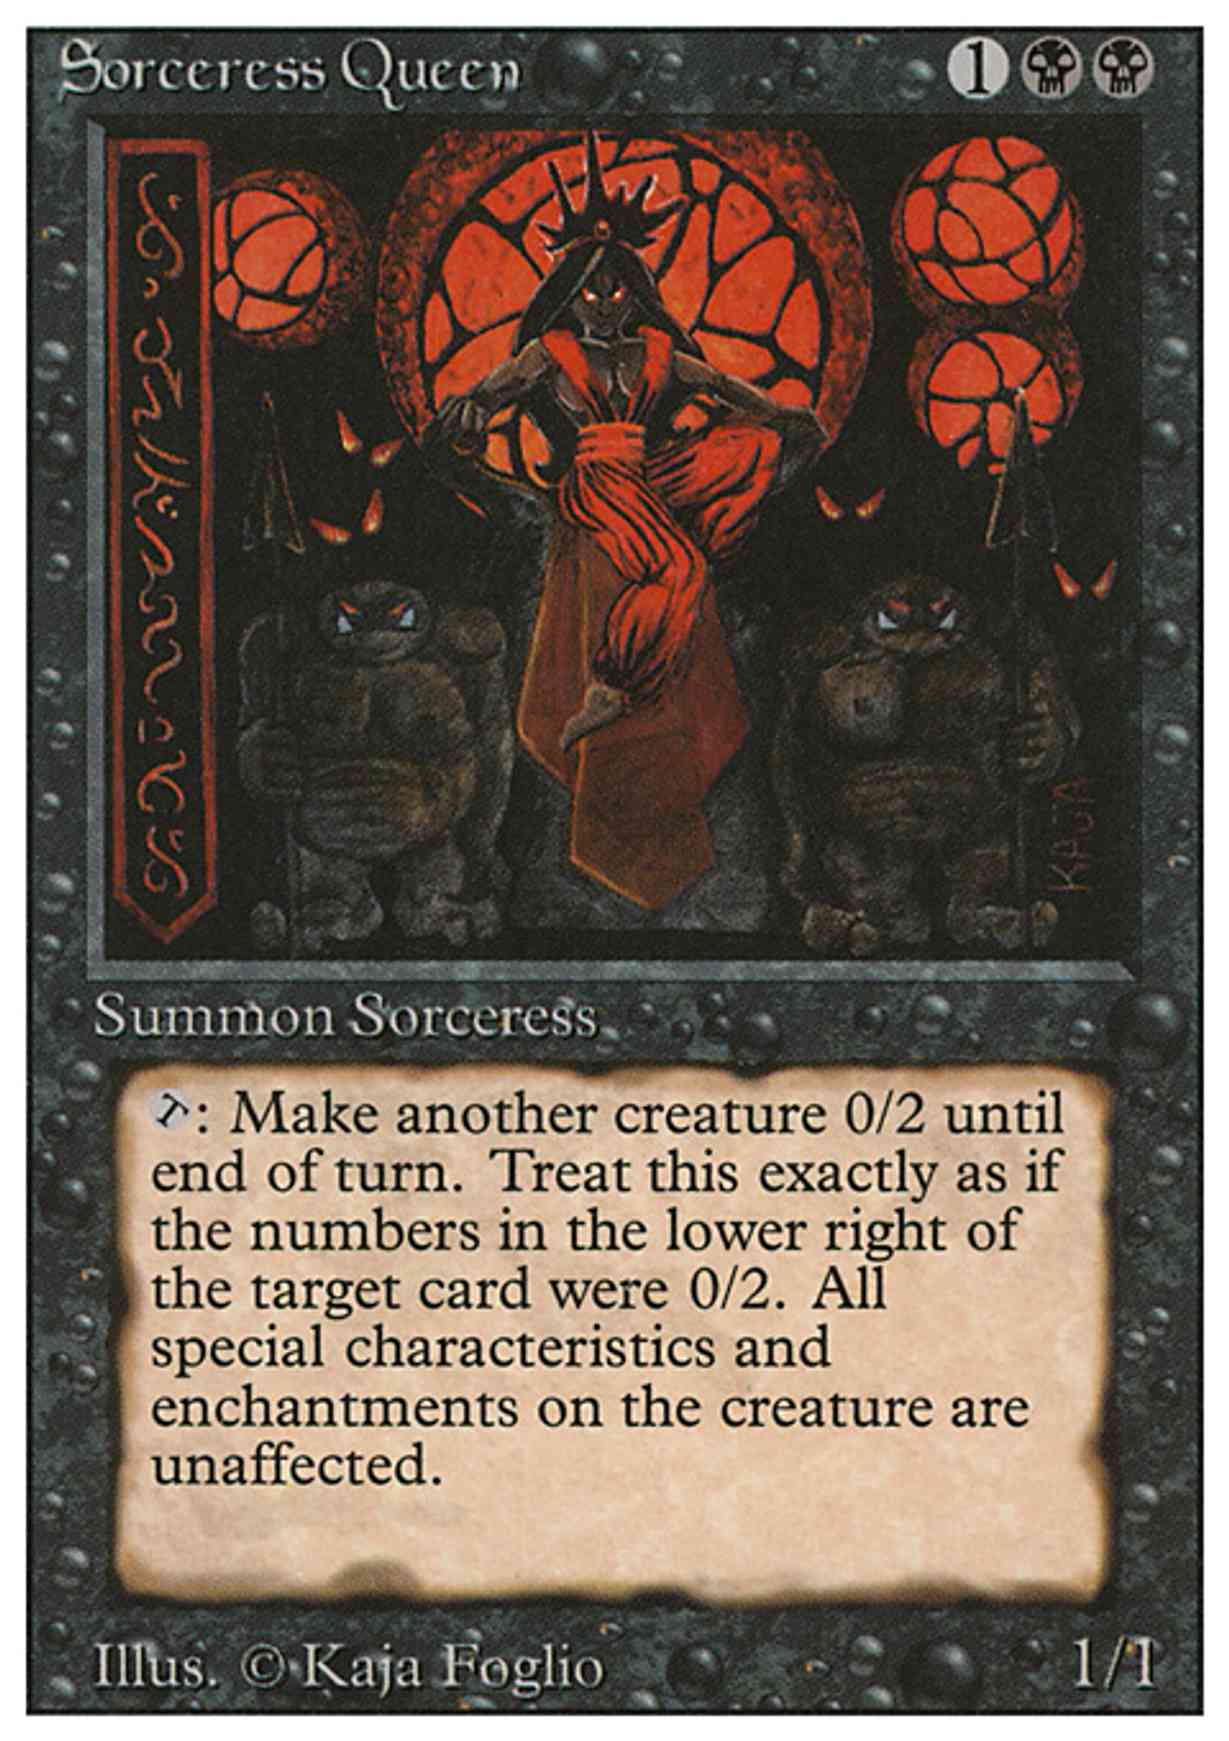 Sorceress Queen magic card front